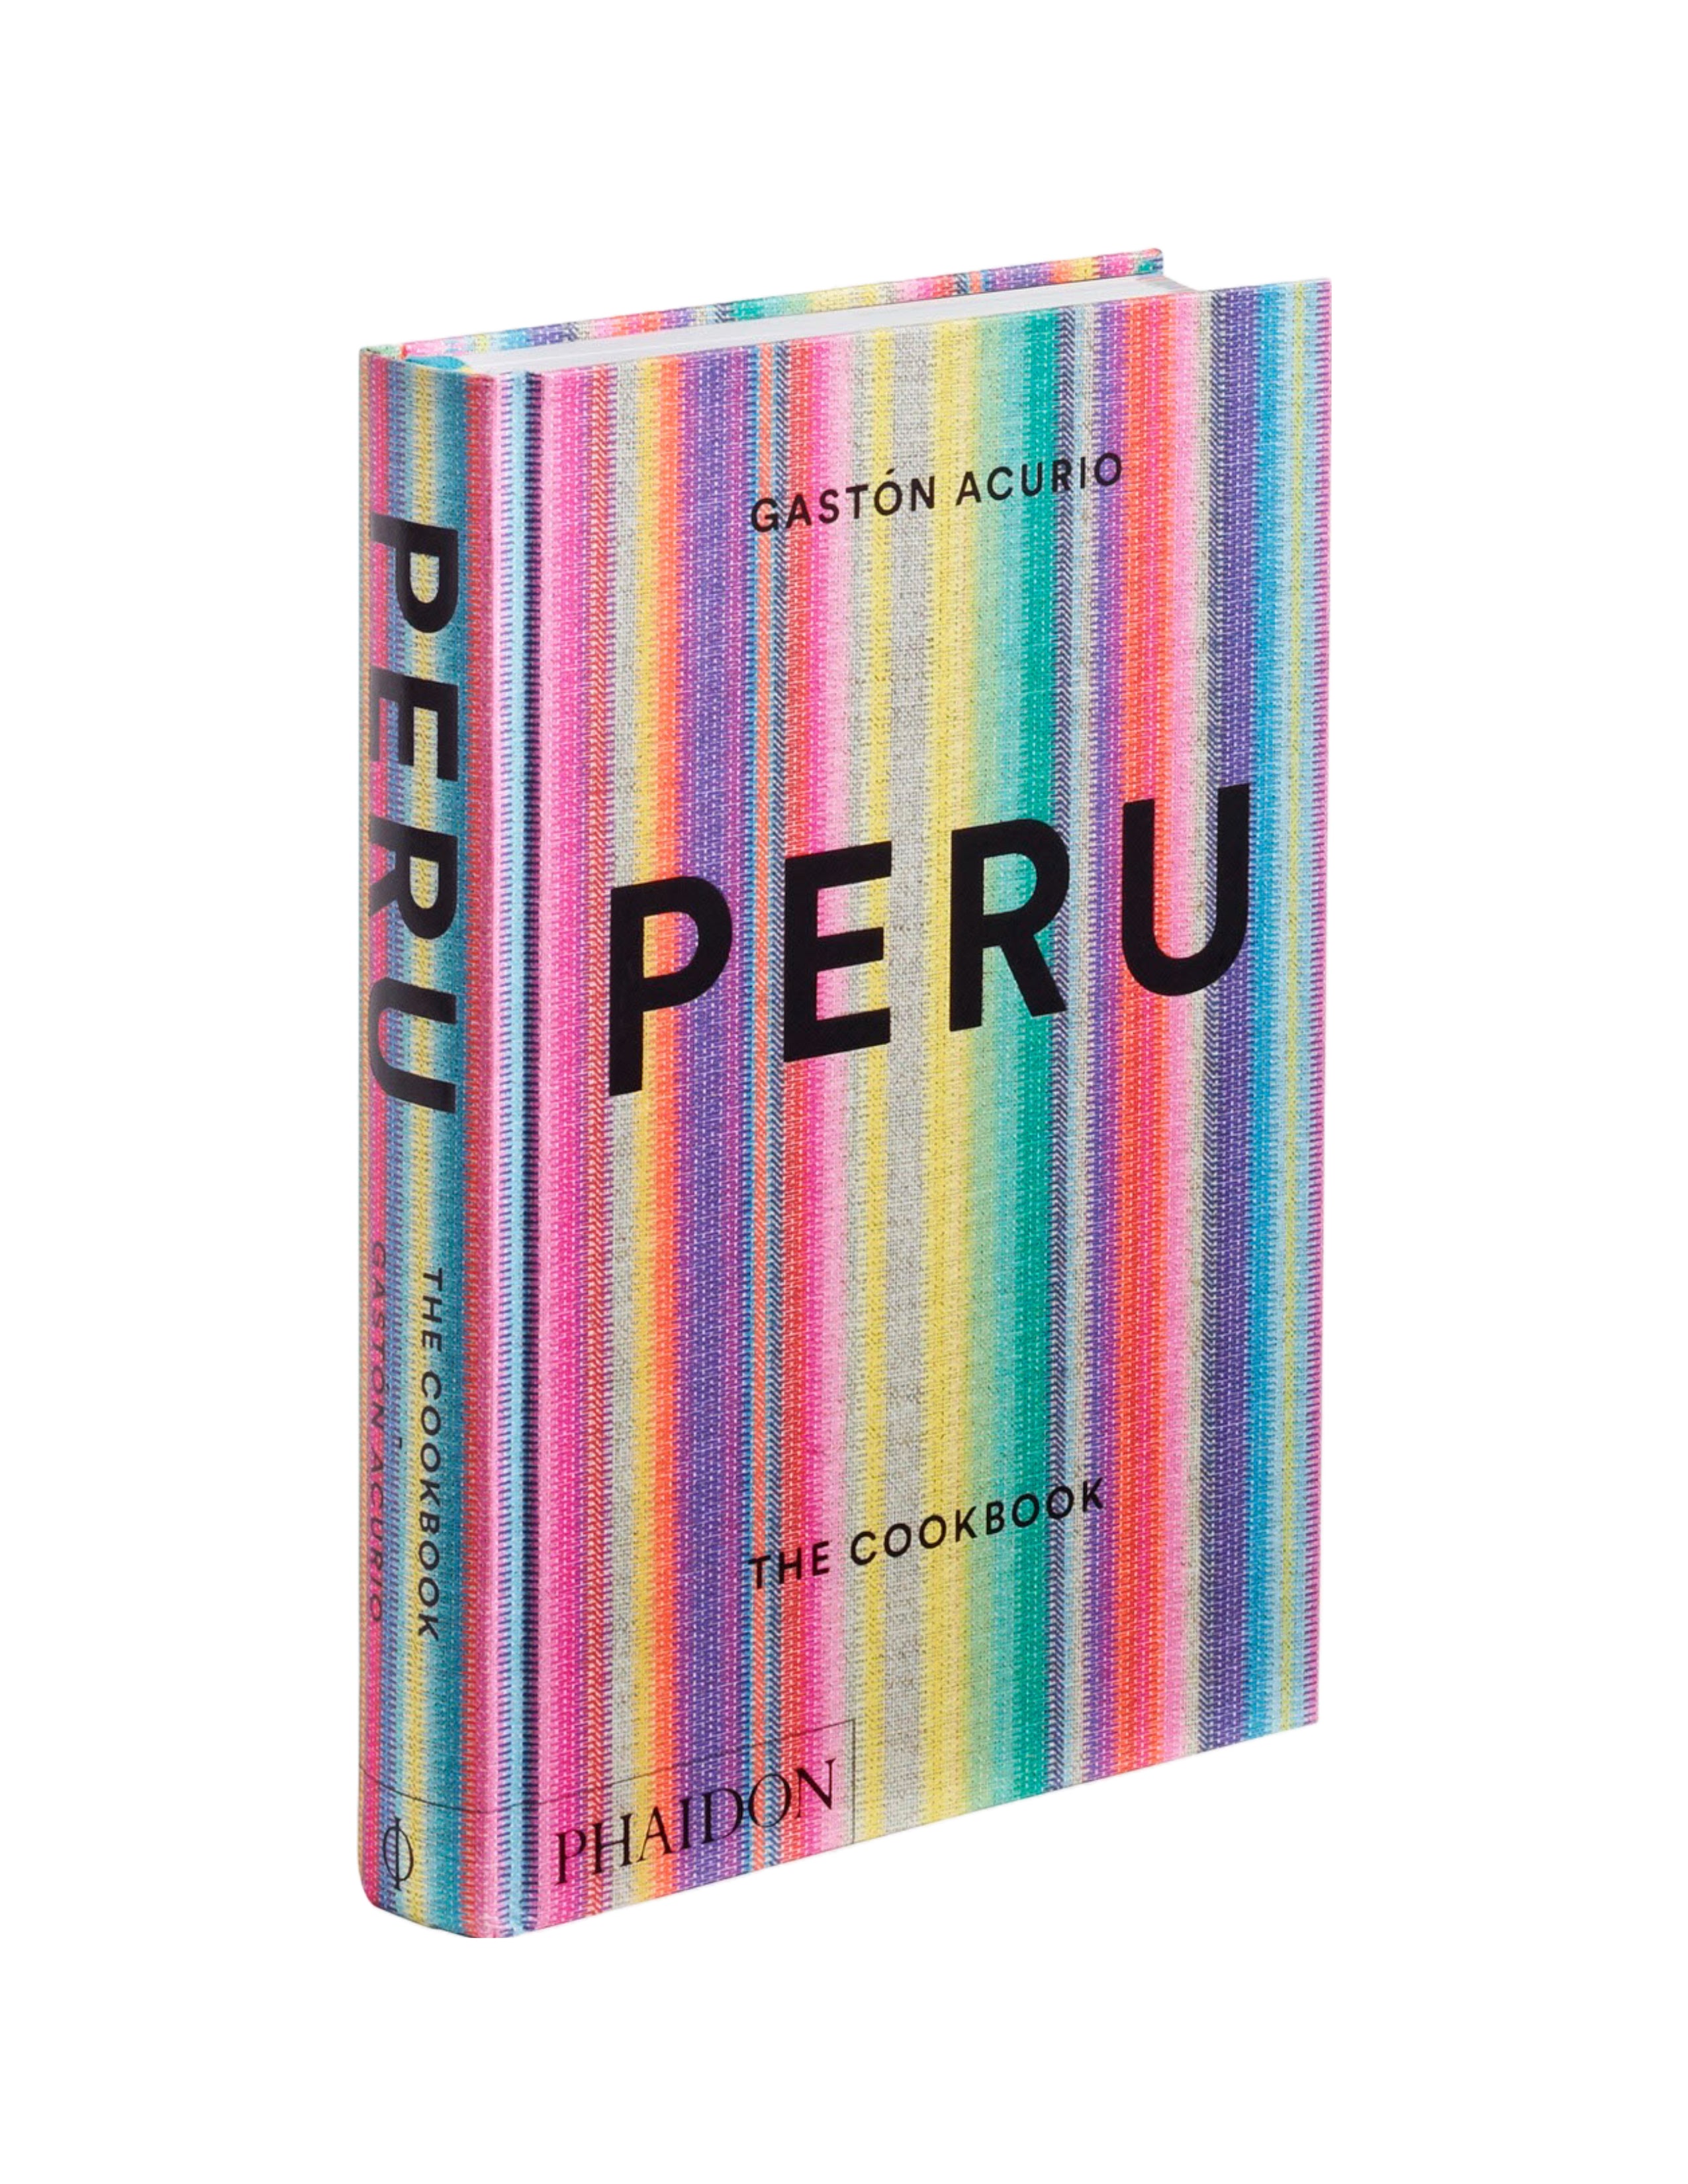 Peru Cookbook